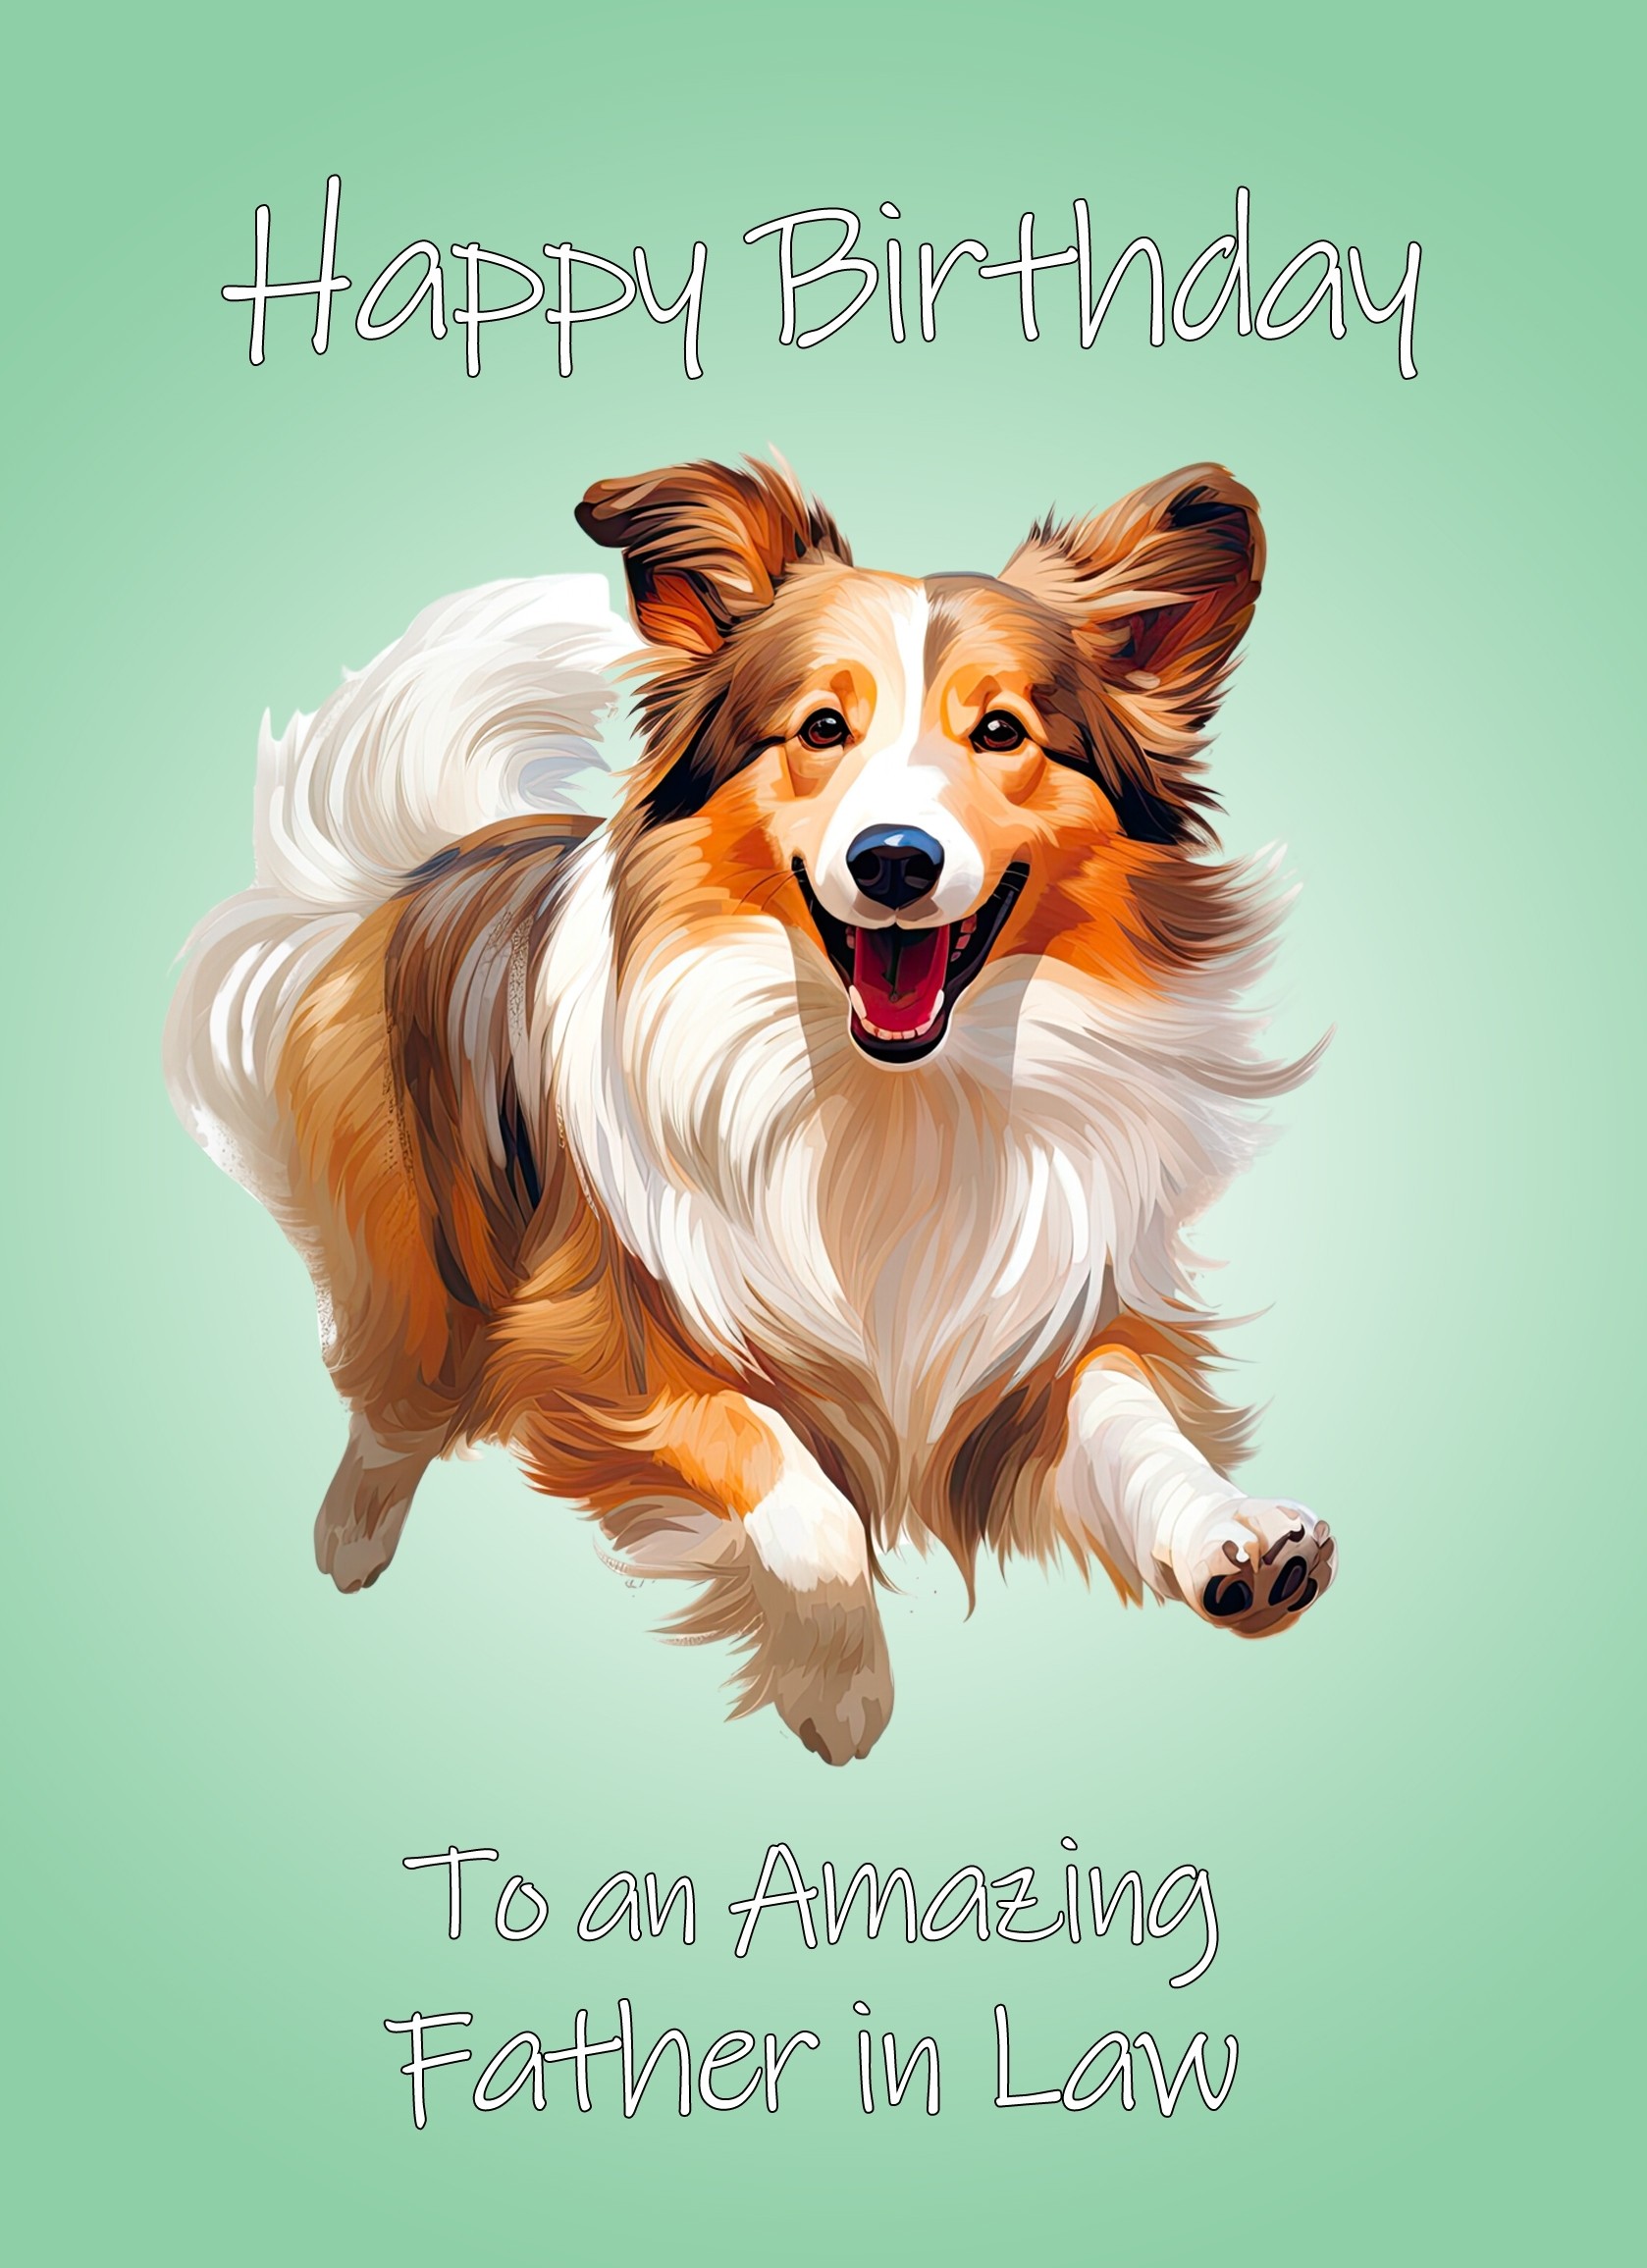 Shetland Sheepdog Dog Birthday Card For Father in Law